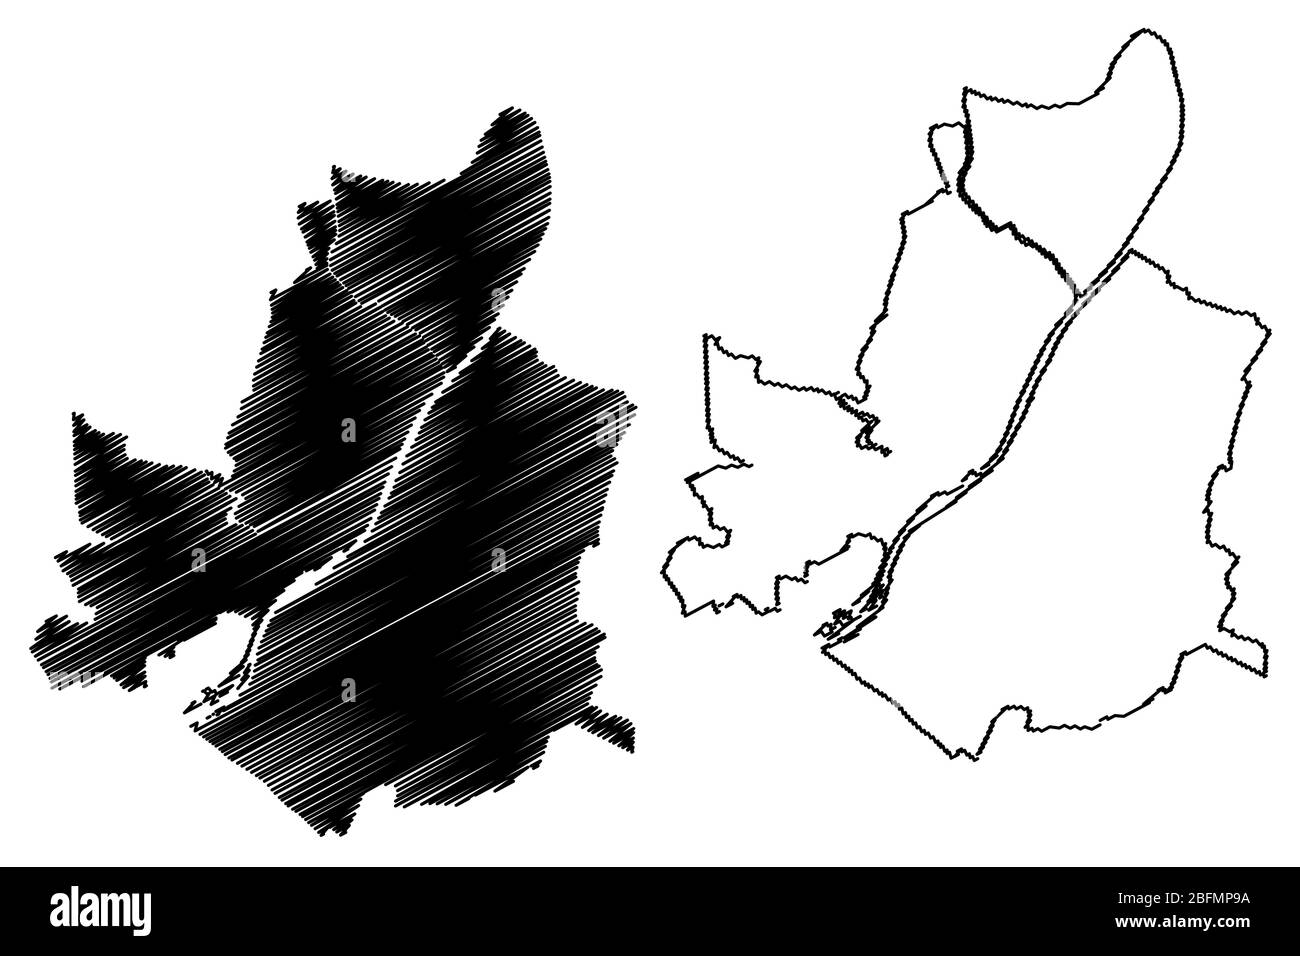 Ville d'Angers (République française, France) illustration vectorielle de carte, esquisse de griffonnage carte de la ville d'Angers Illustration de Vecteur